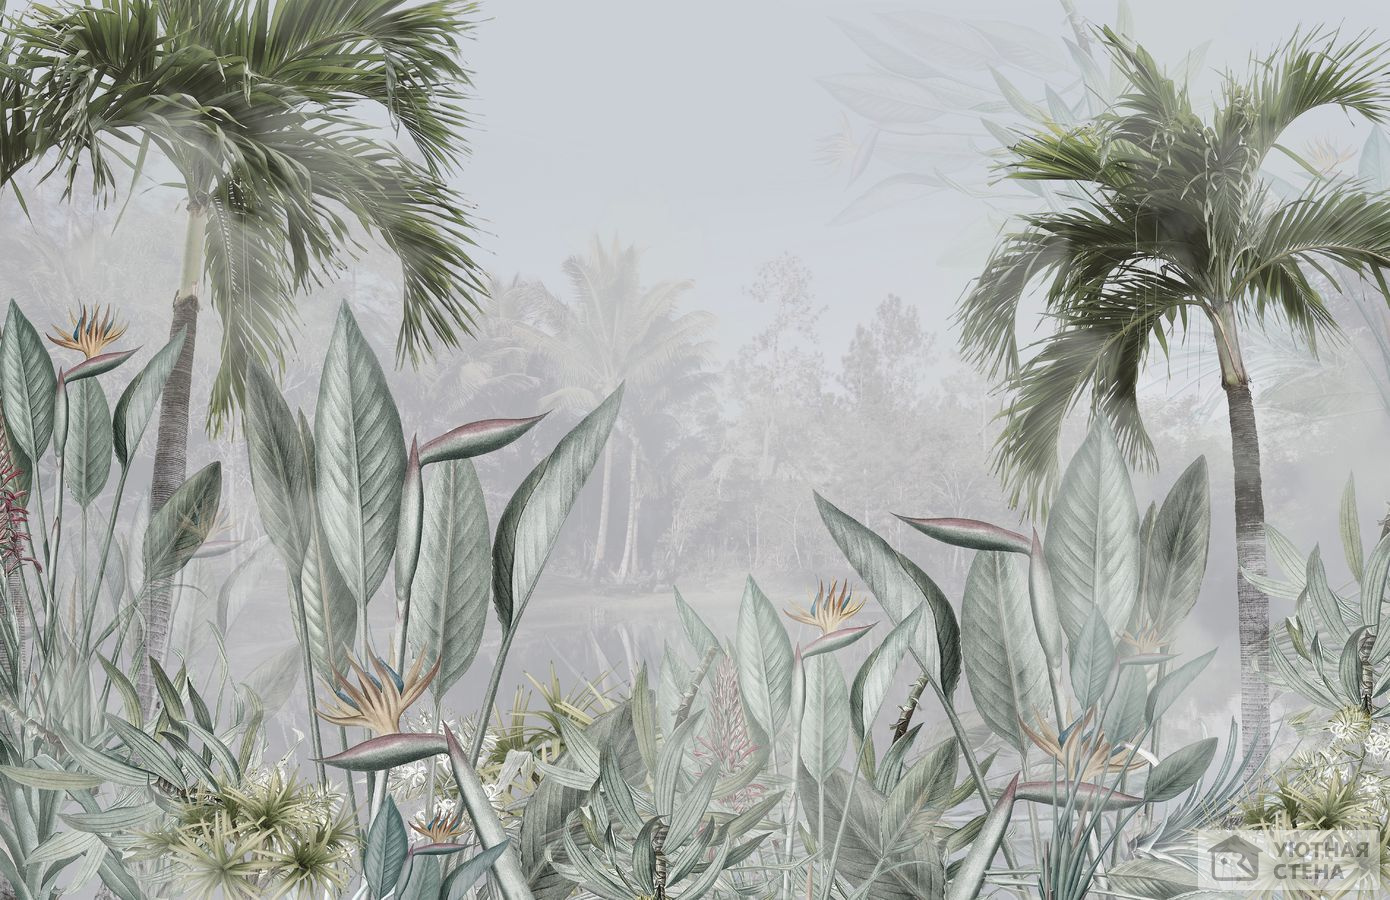 Туман над тропическими листьями